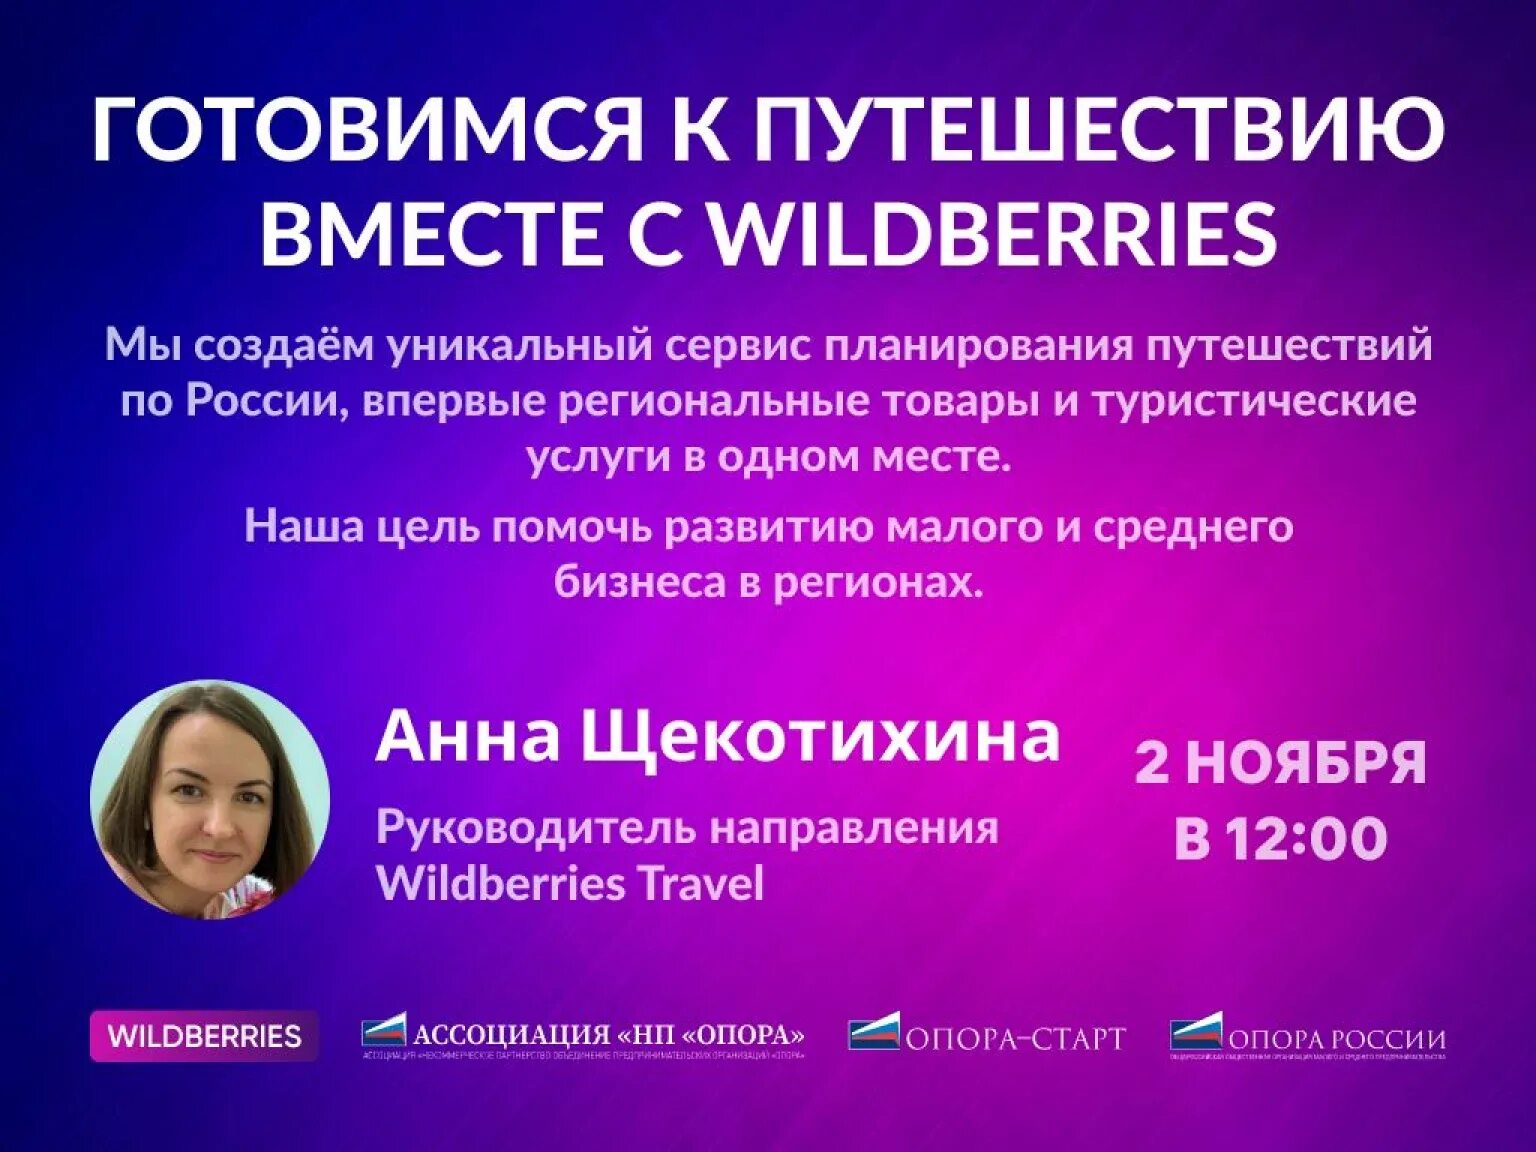 Wildberries travel. Wildberries вебинар. Маркетплейс вебинар. Форма участия в вебинаре. Приглашение на вайлберис.